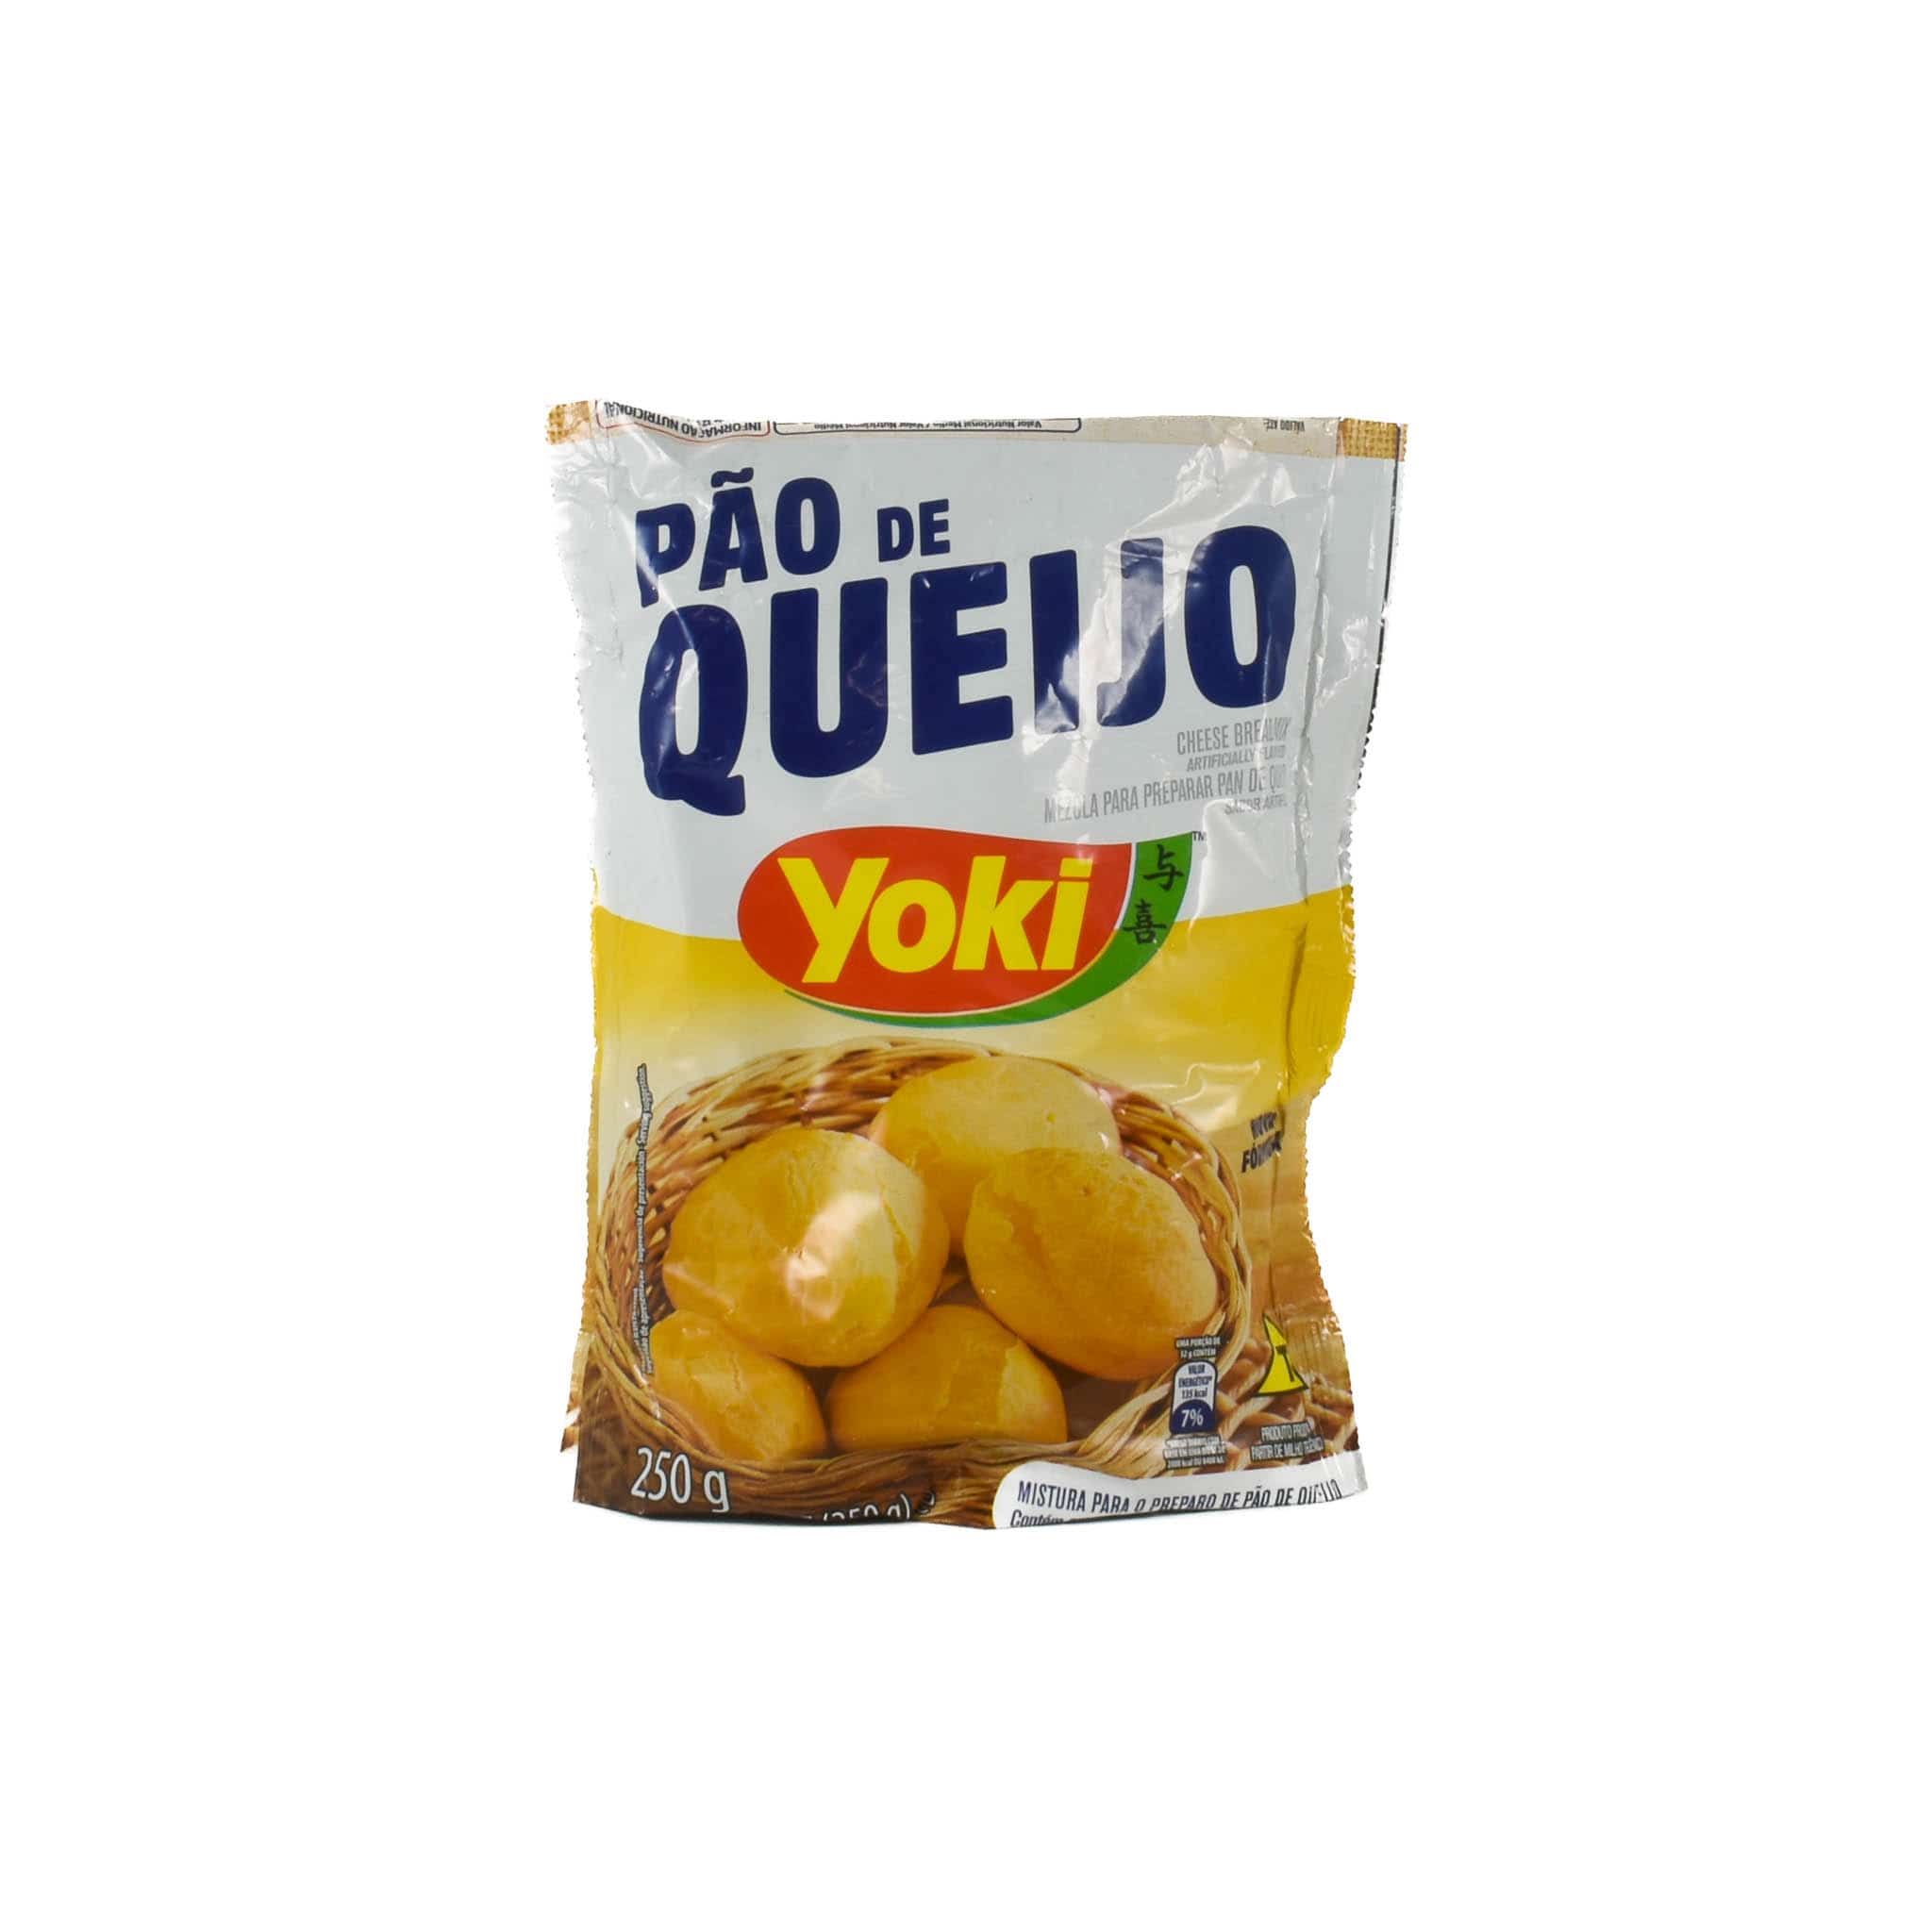 Yoki Pao De Queijo Cheesebread Mix, 250g